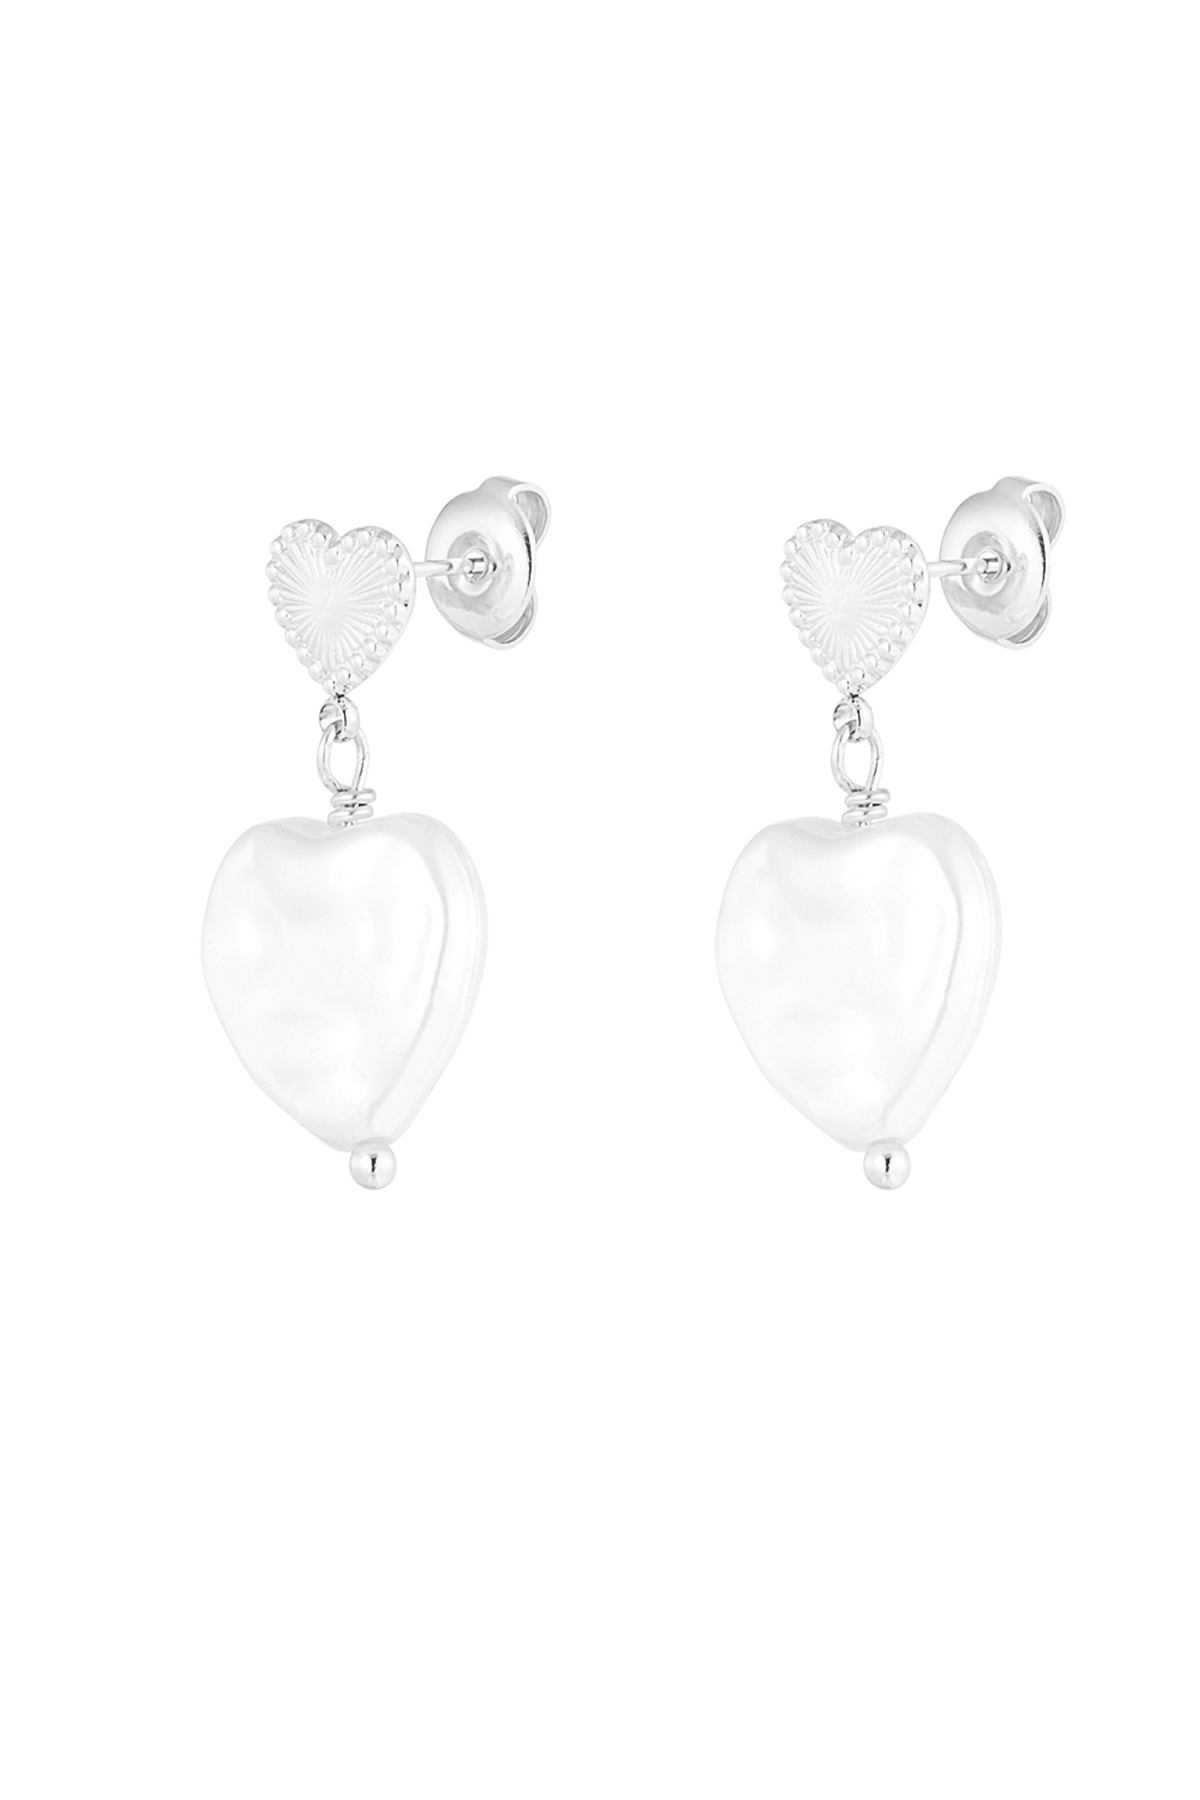 Double heart earrings large pearl - silver